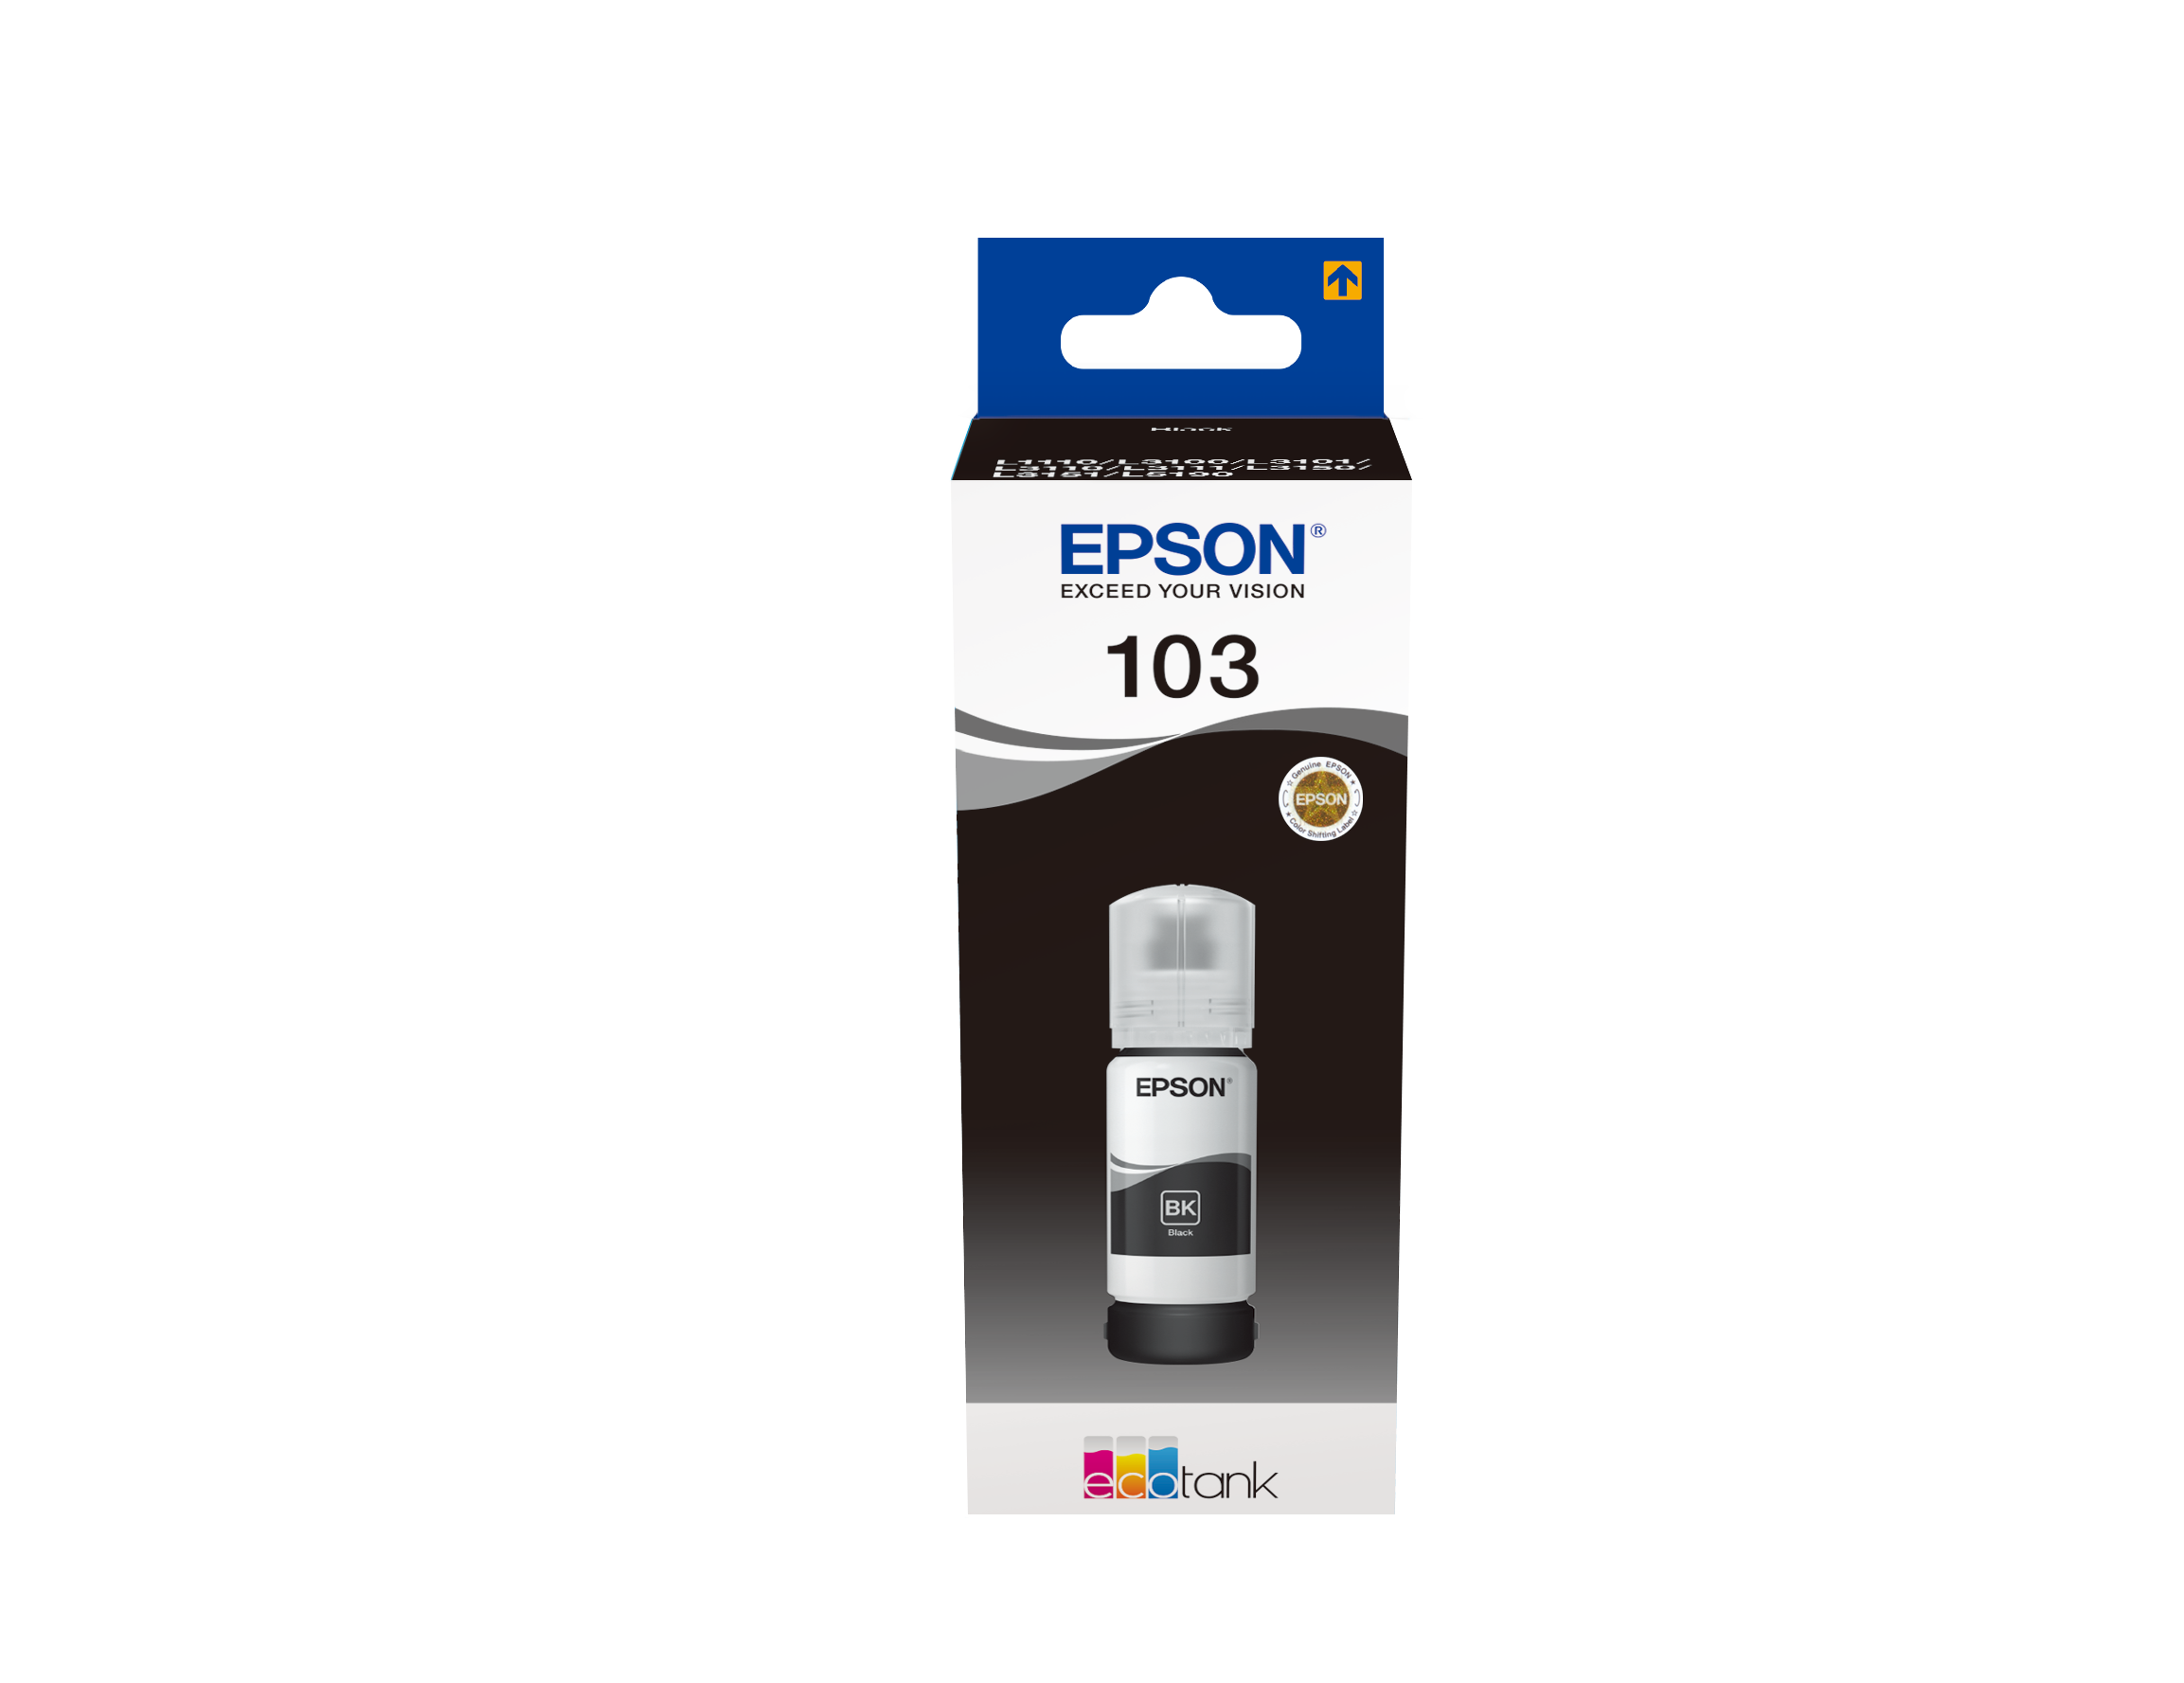 Epson EcoTank L1250 Imprimante à réservoirs rechargeables (C11CJ71403) –  Logically